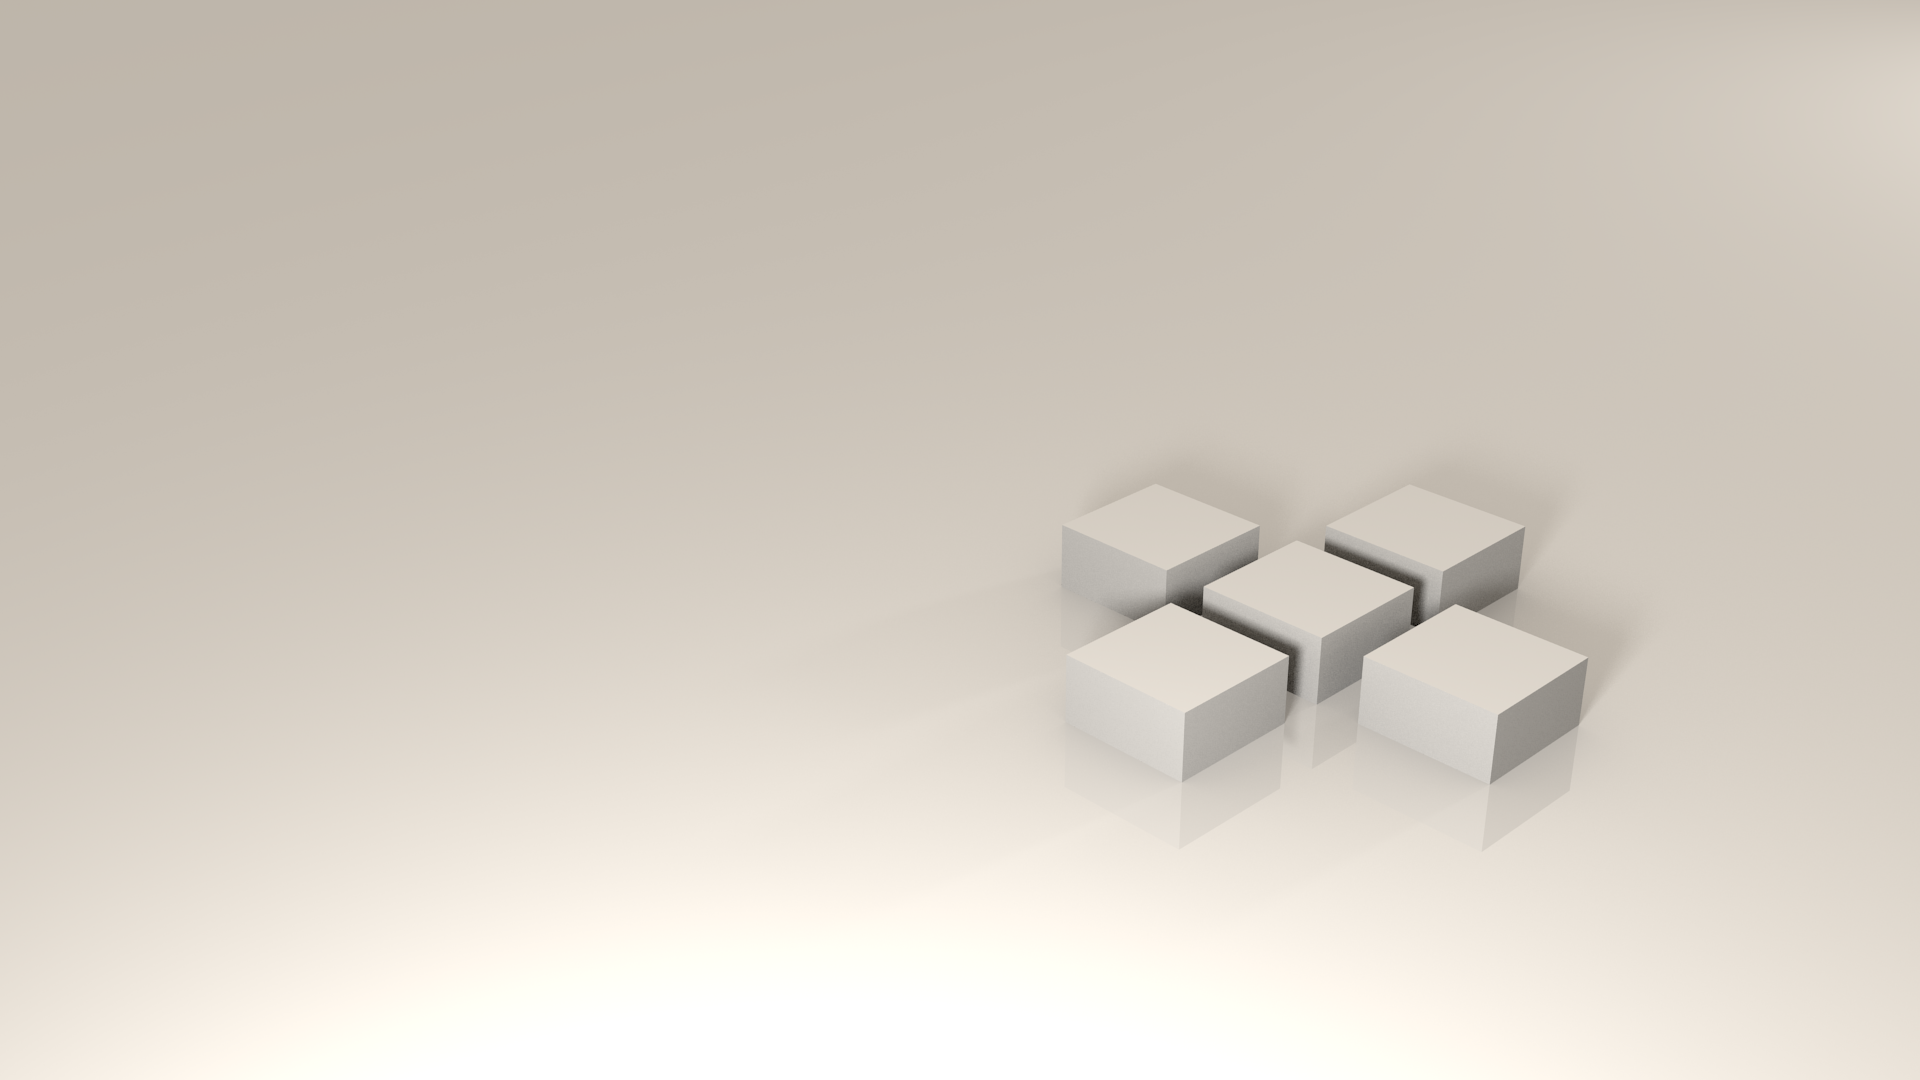  3D Cubes image 